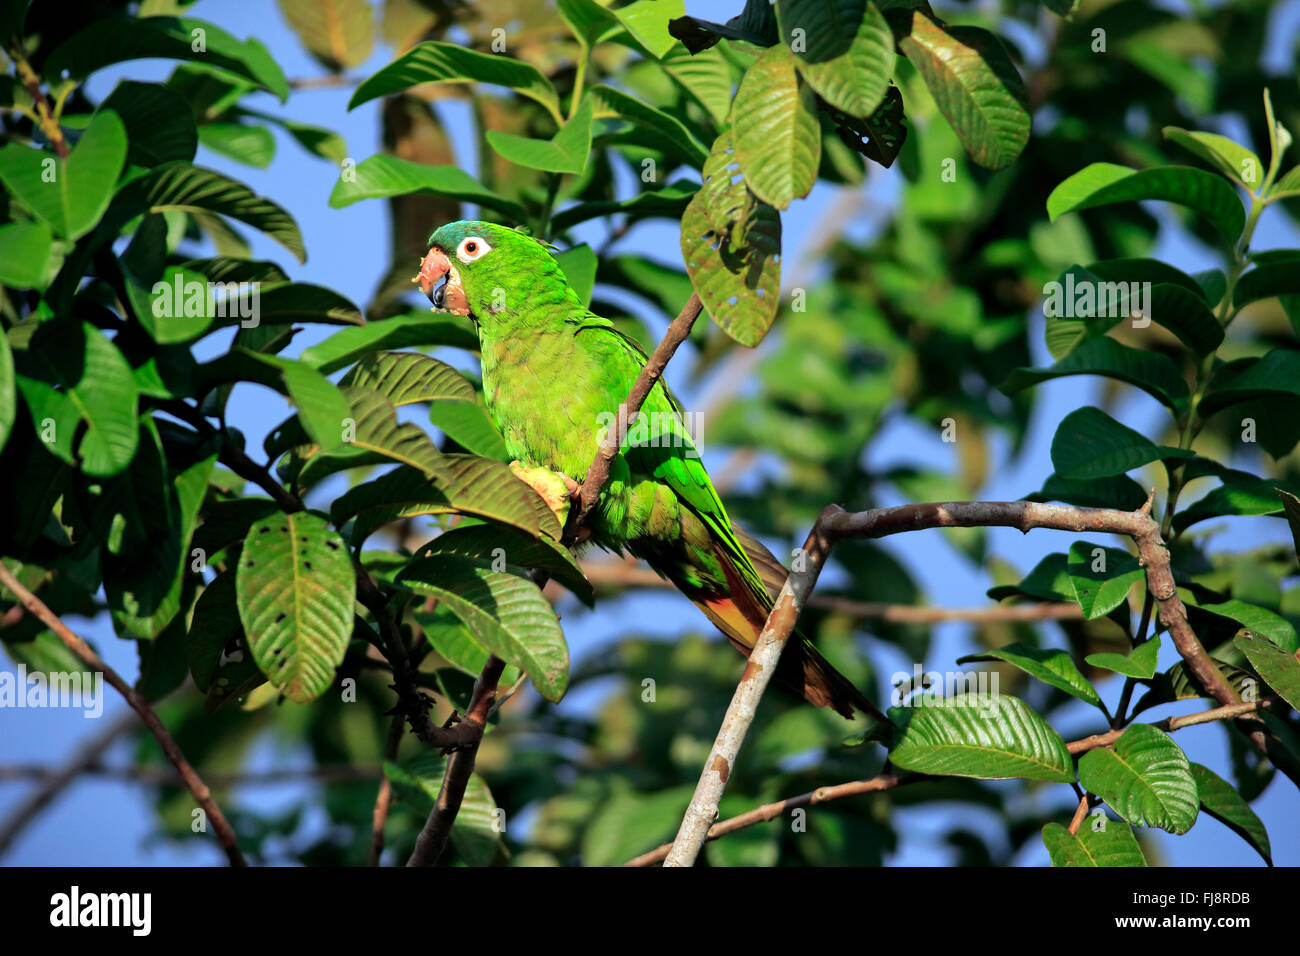 Motmot perruche, des profils sur l'arbre se nourrit de fruits, fig, Pantanal, Mato Grosso, Brésil, Amérique du Sud (Thectocercus acuticaudatus /) Banque D'Images